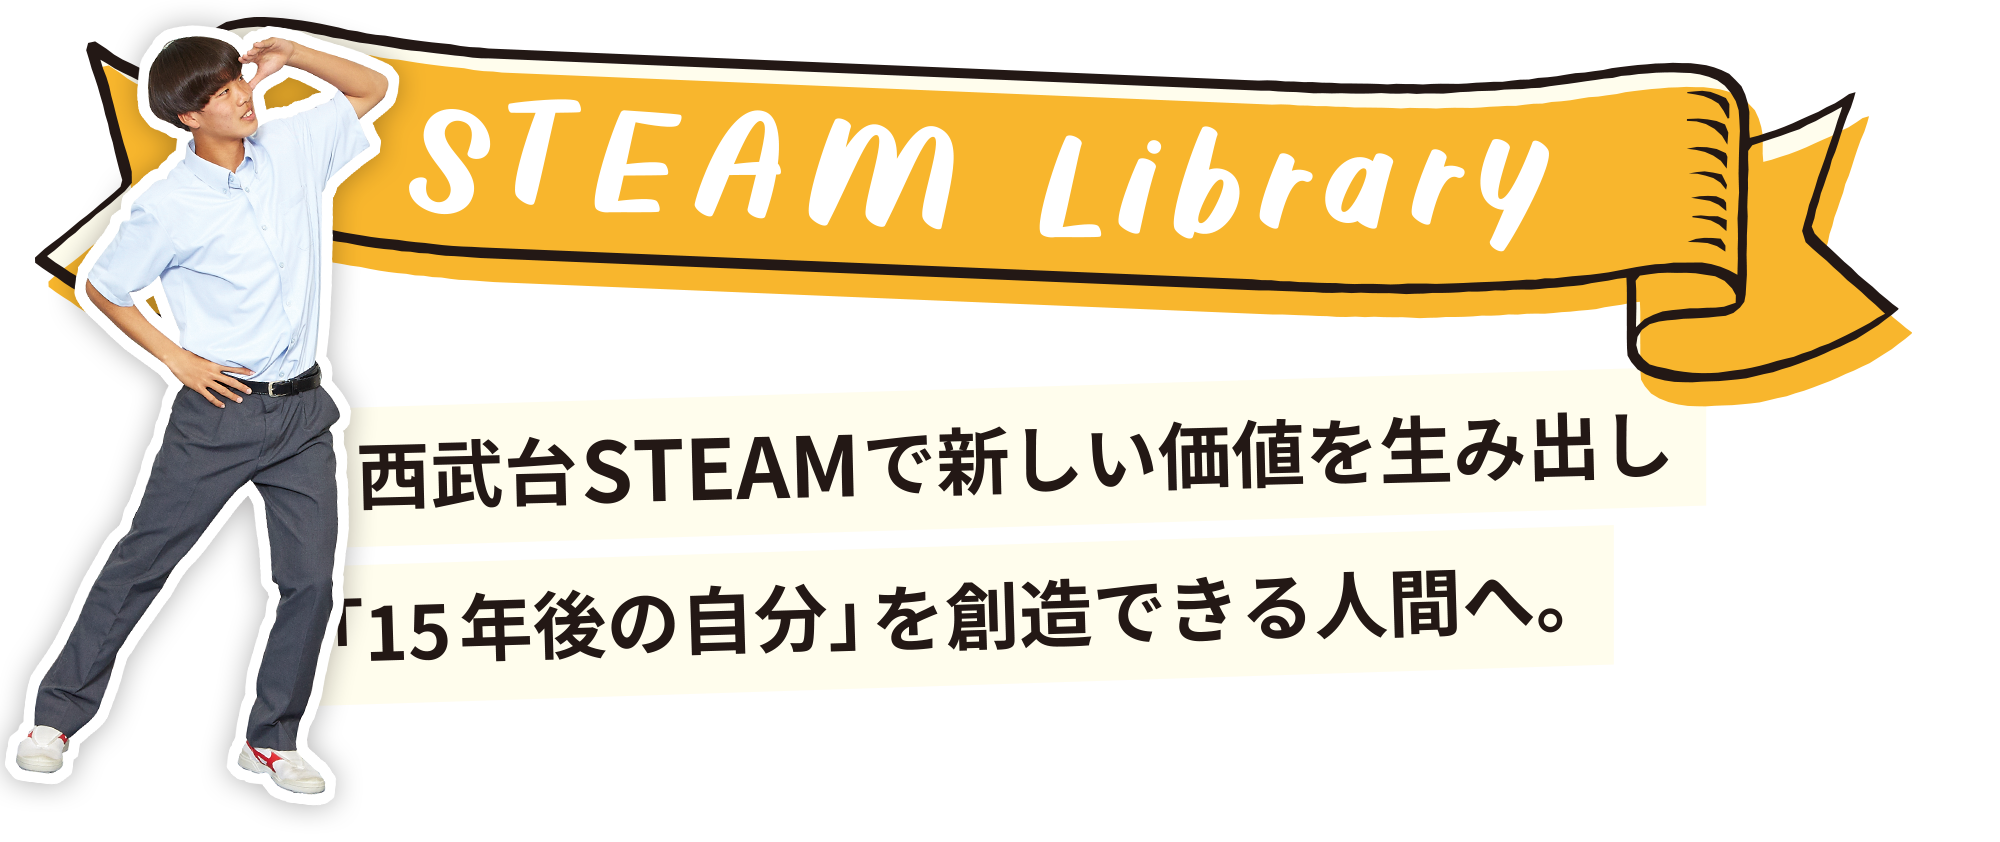 STEAM Library　⻄武台STEAMで新しい価値を生み出し「15年後の自分」を創造できる人間へ。